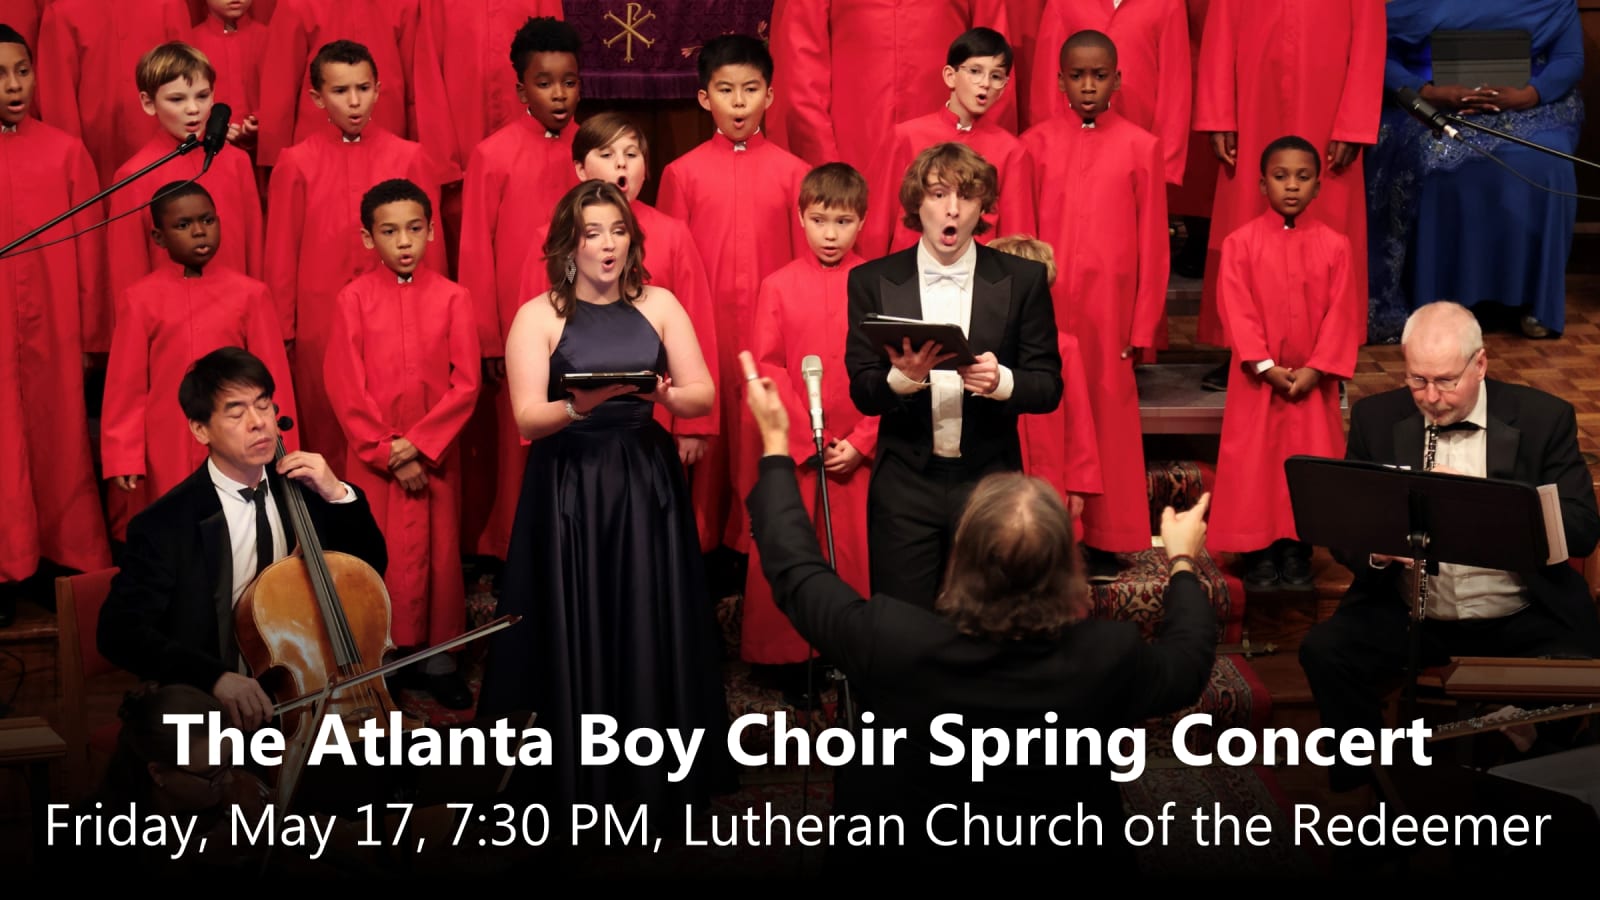 The Atlanta Boy Choir Spring Concert